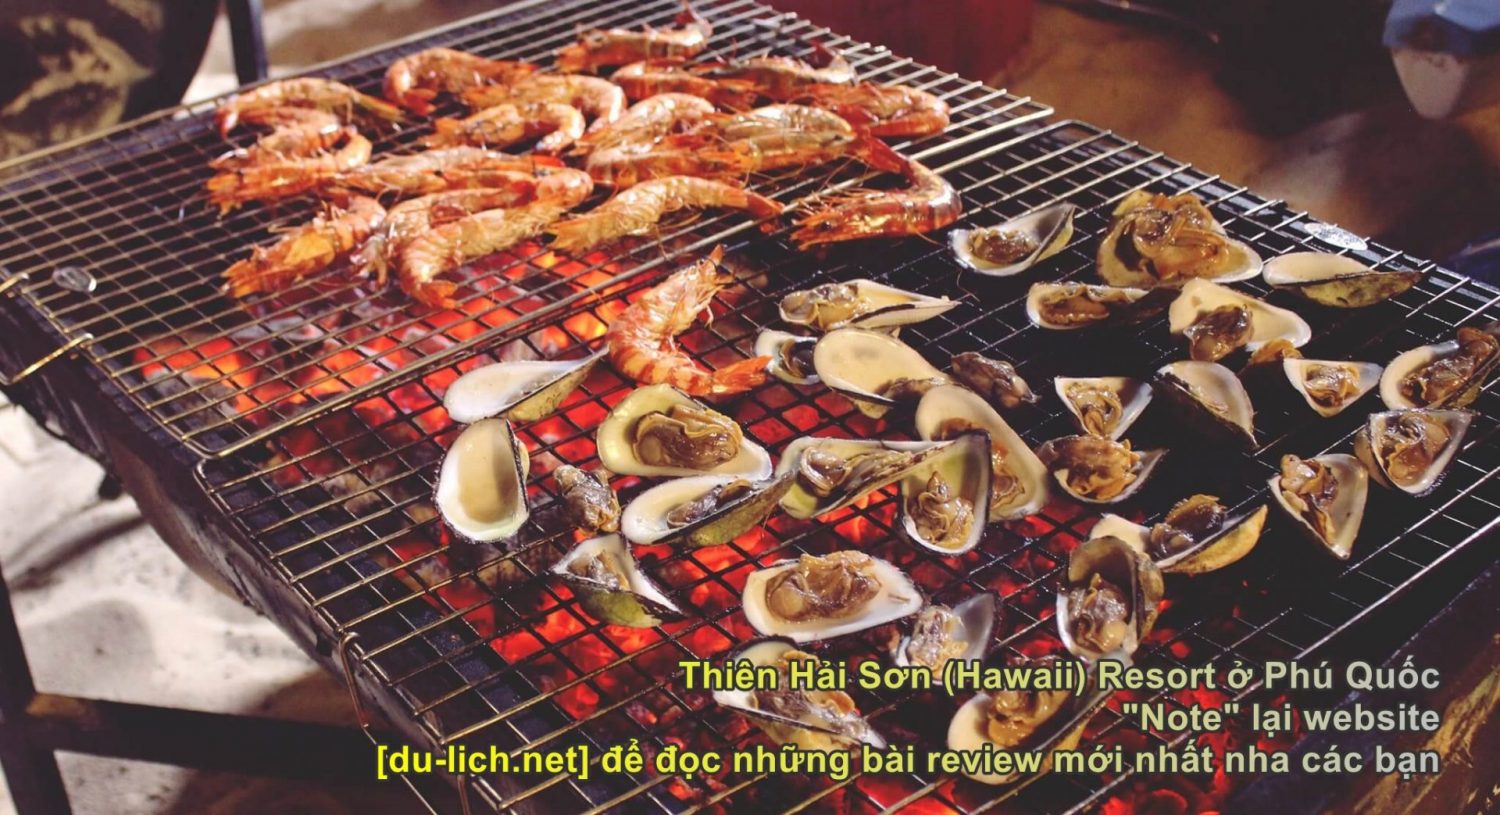 Các món ăn hải sản ở Thiên Hải Sơn Resort Phú Quốc